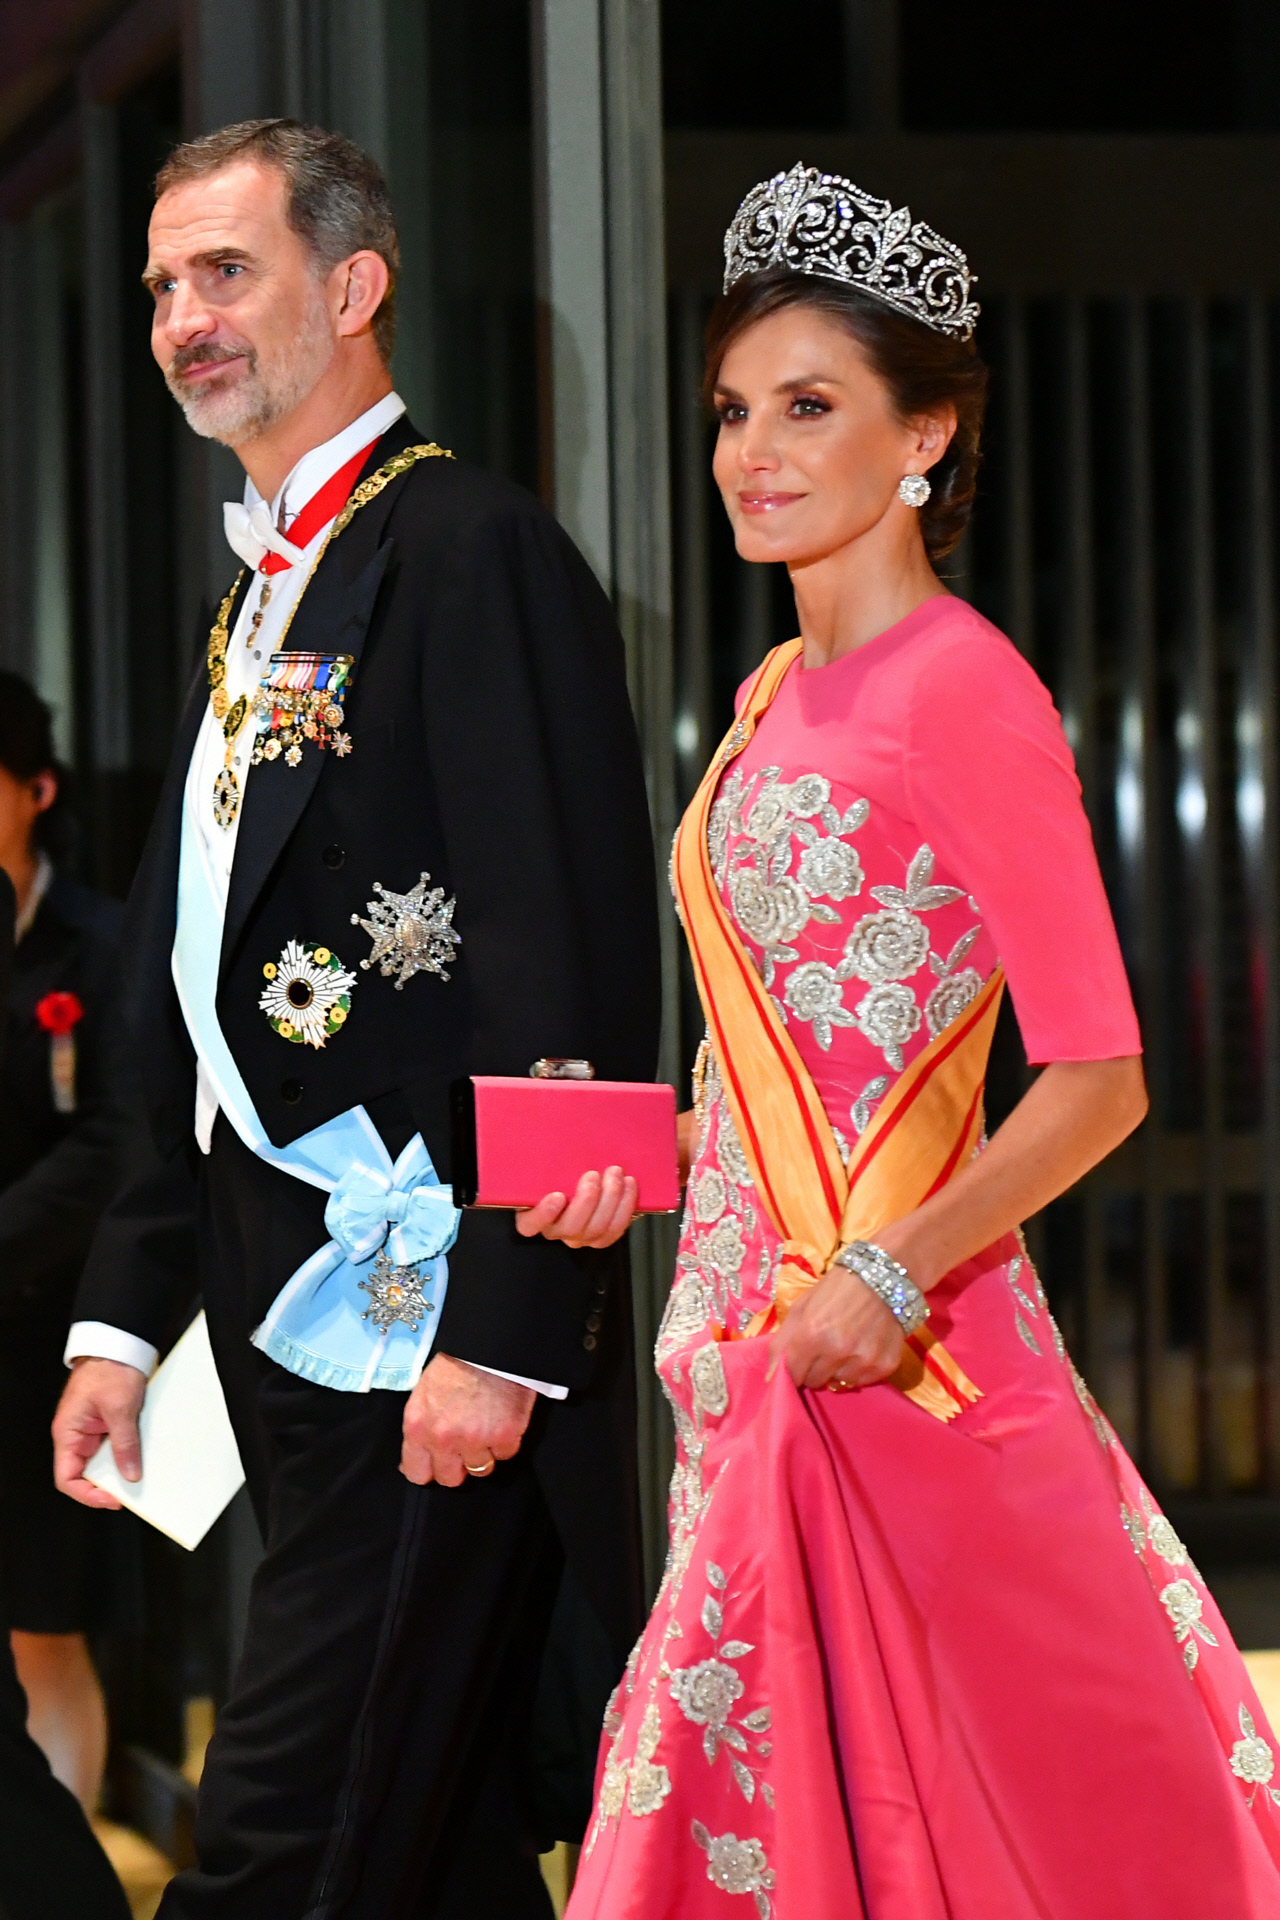 La reina Letizia con la tiara Flor de Lis